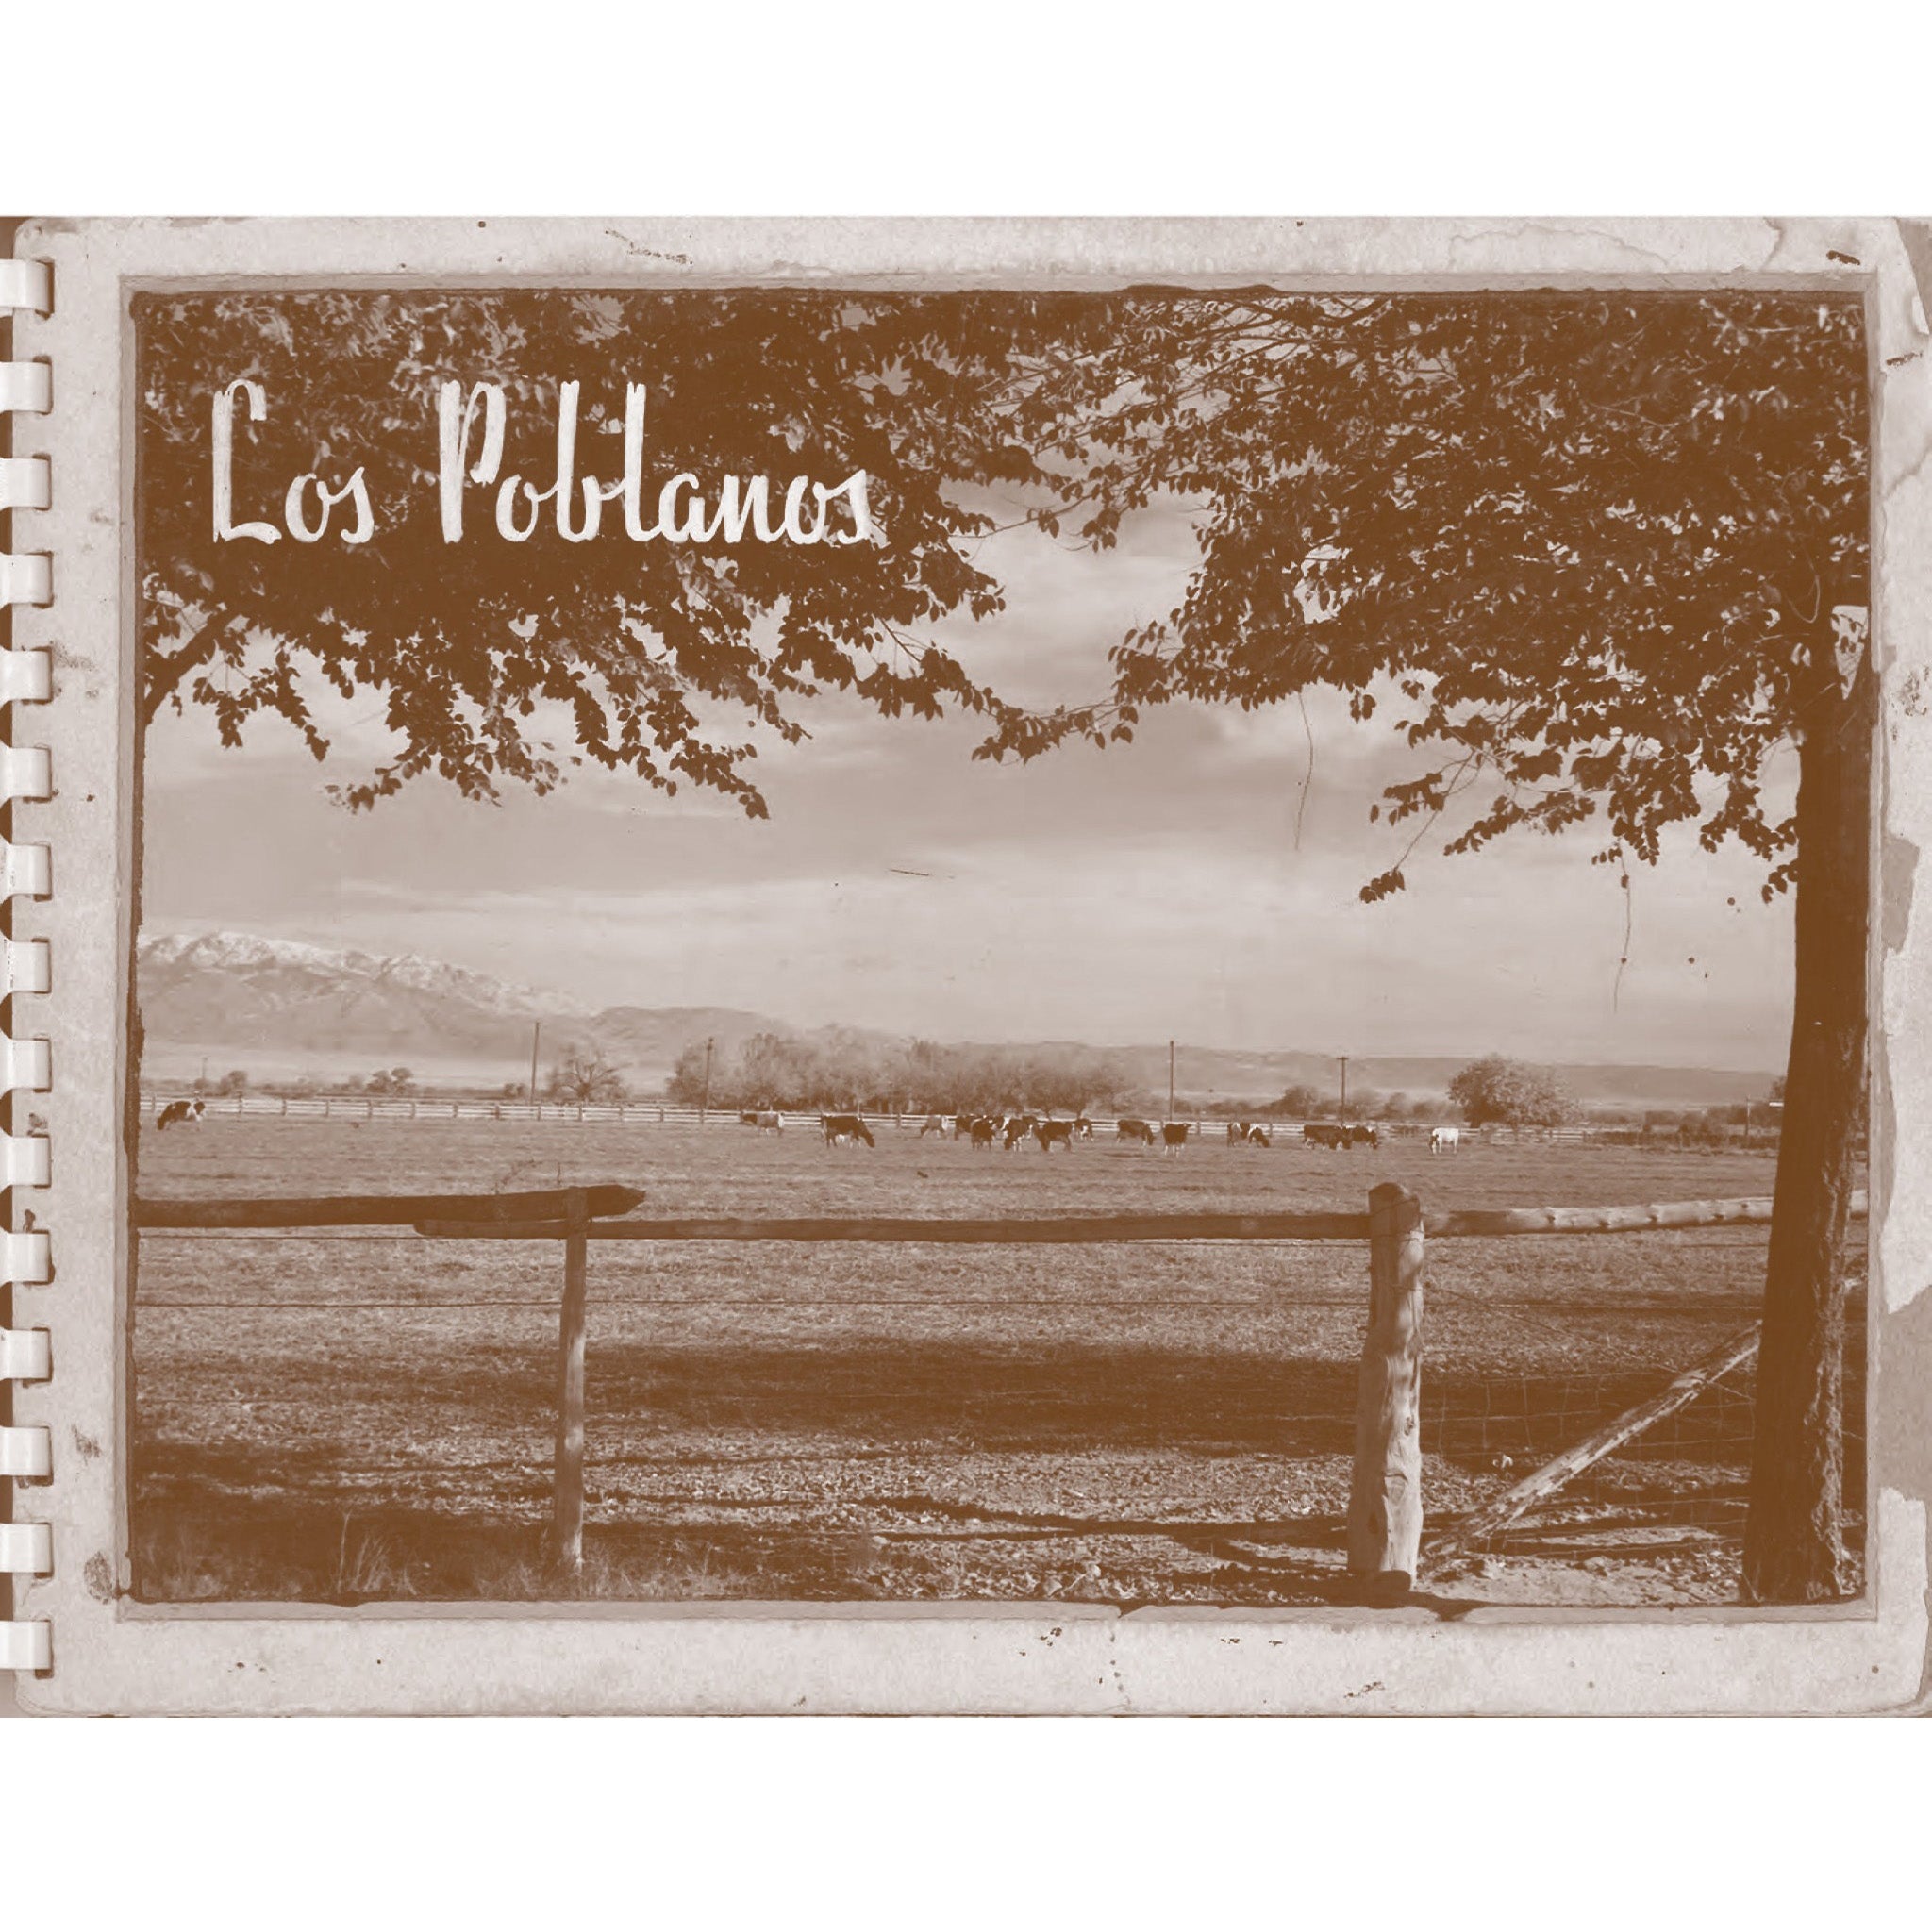 Los Poblanos Vintage Postcard